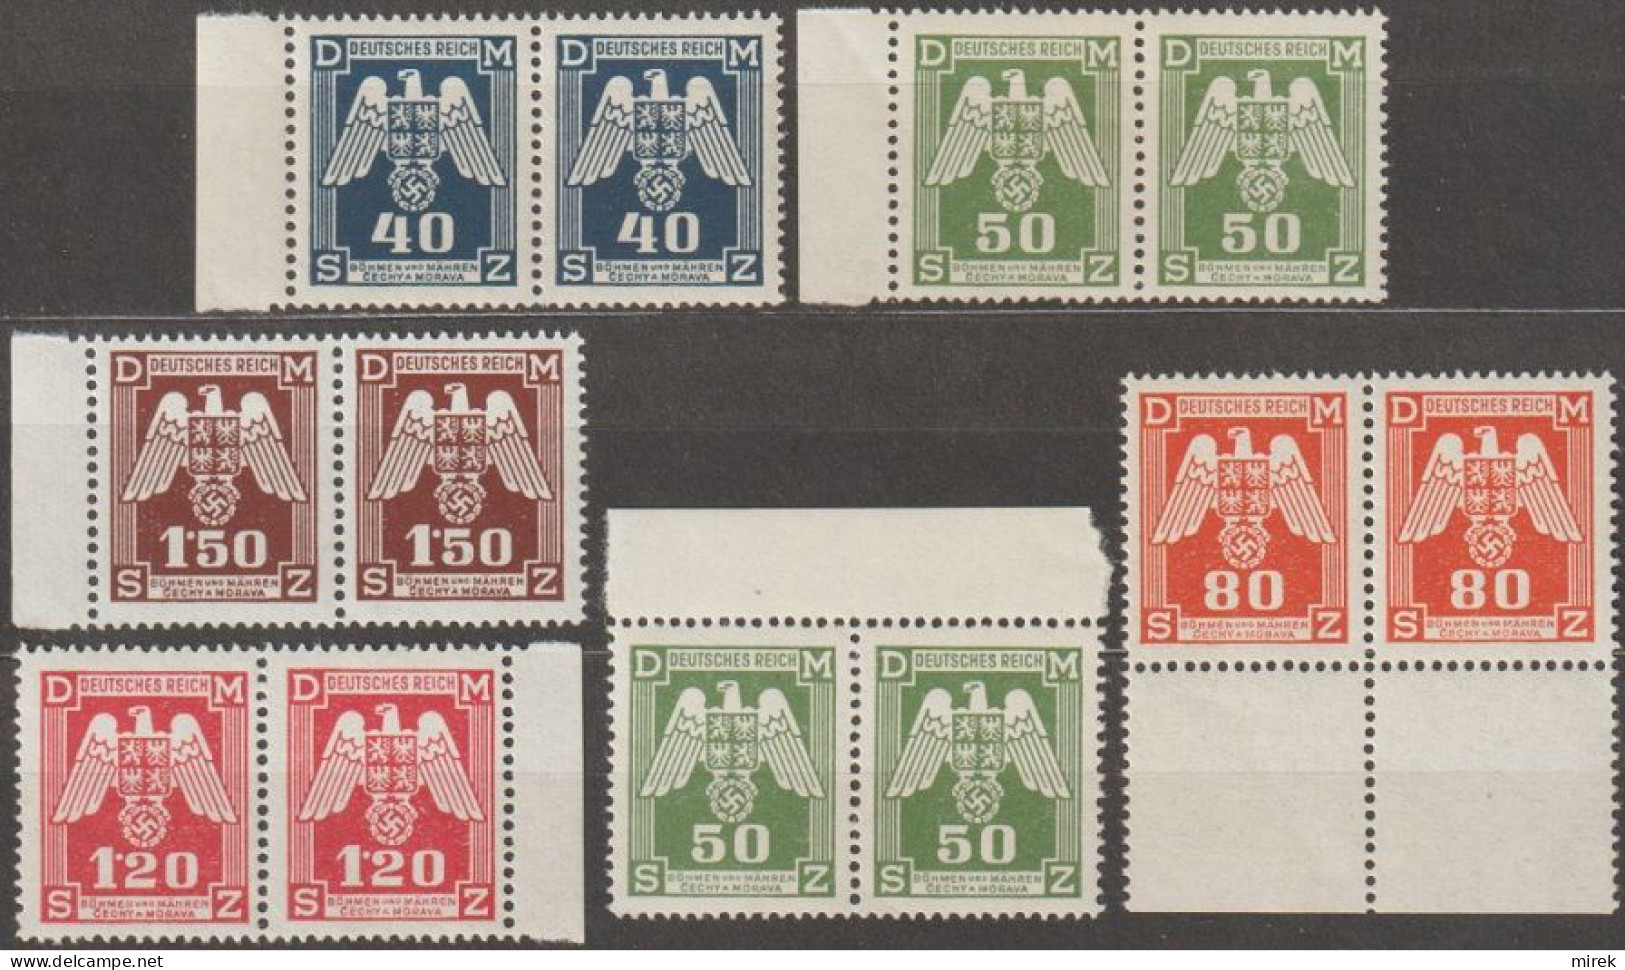 007/ Pof. SL 13-14,17,19-20, Border Pairs - Unused Stamps